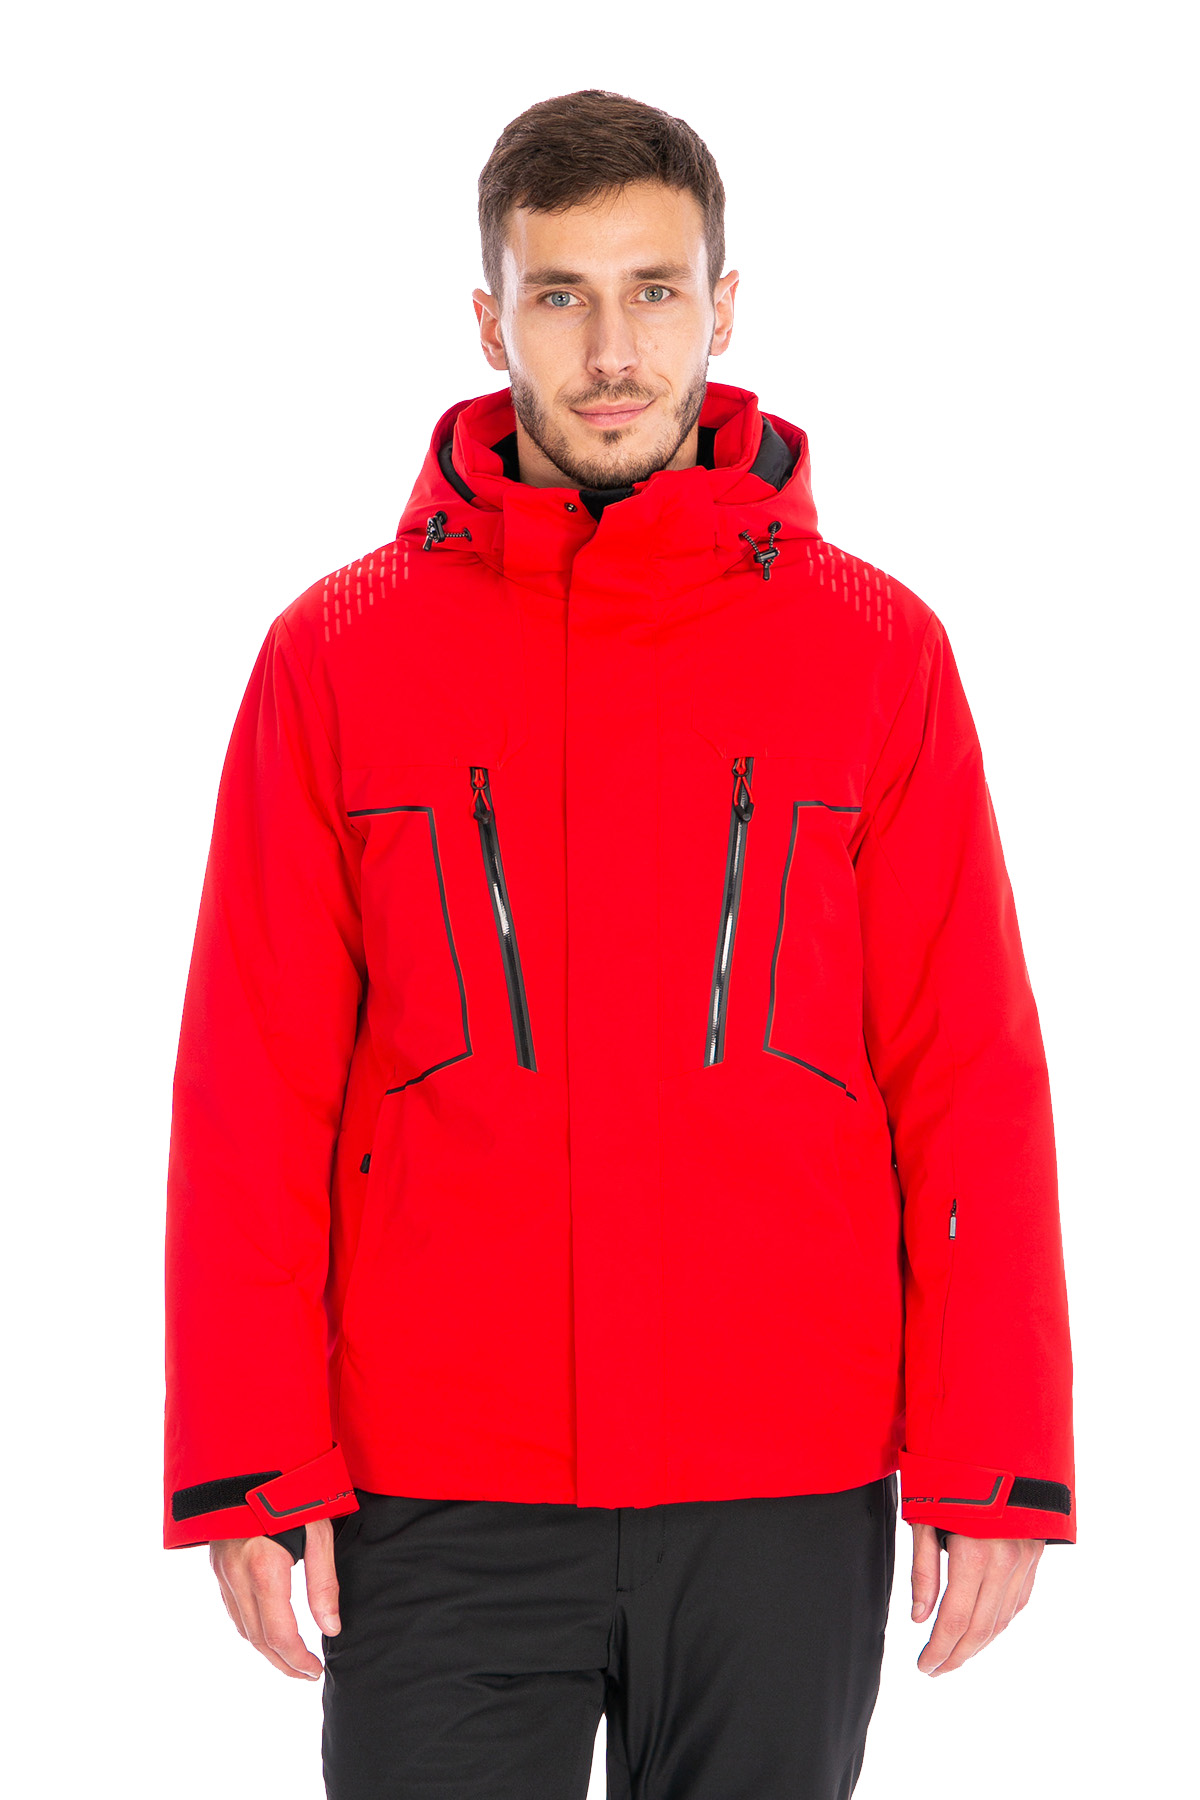 Мужская горнолыжная Куртка Lafor Красный, 767013 (50, l)